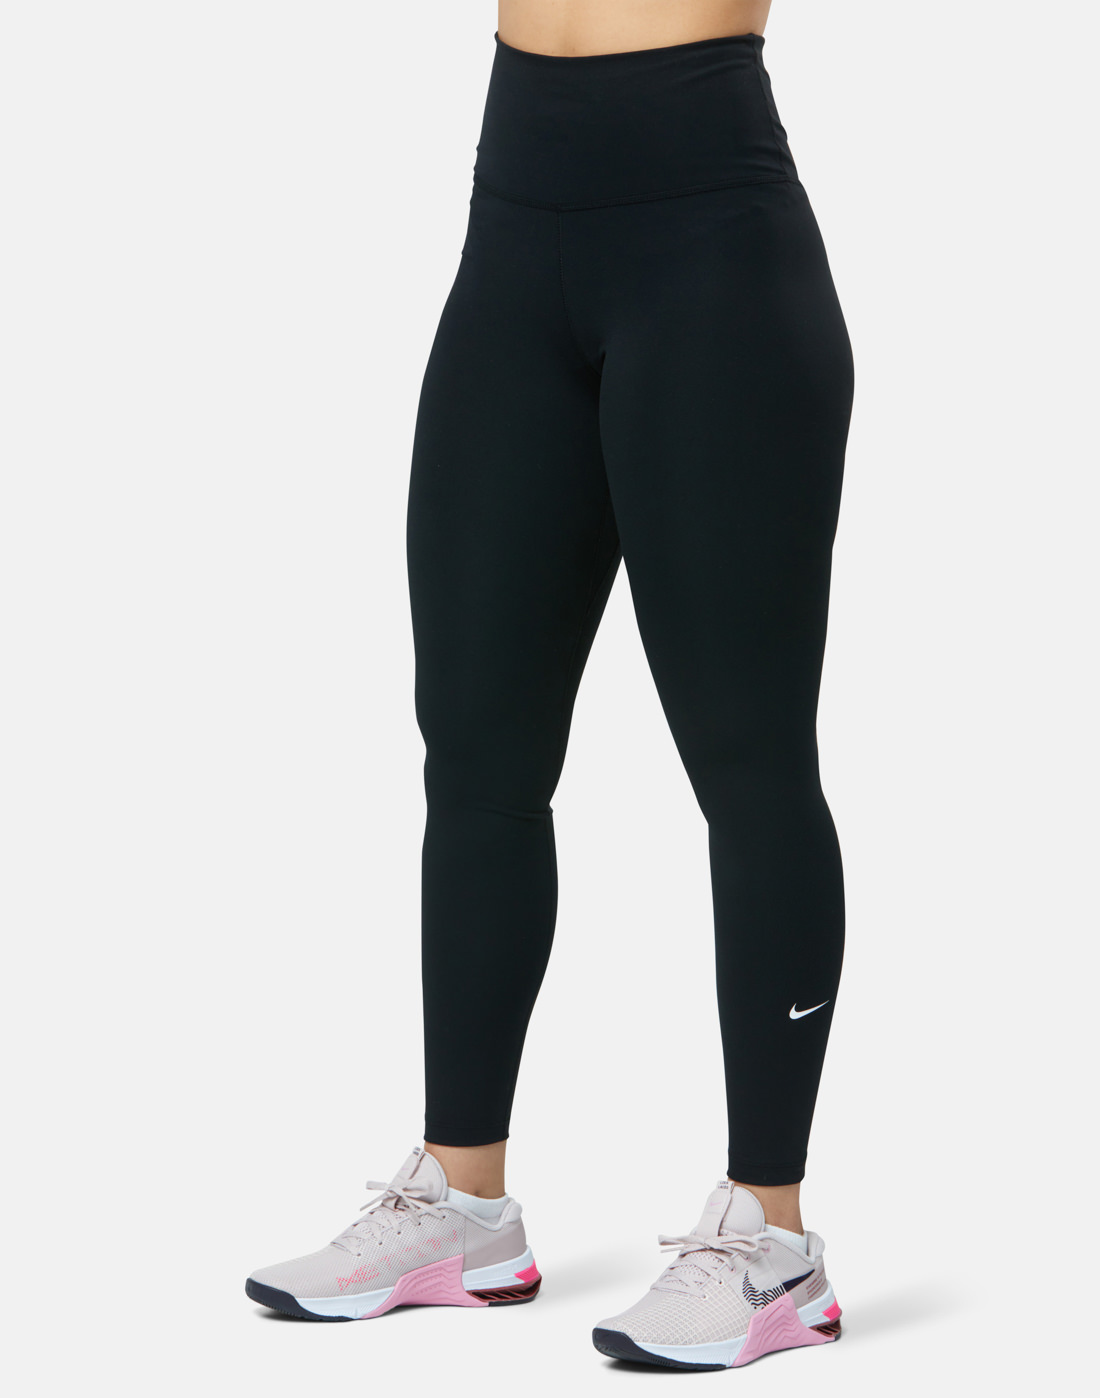 Nike Womens One High Rise Leggings - Black